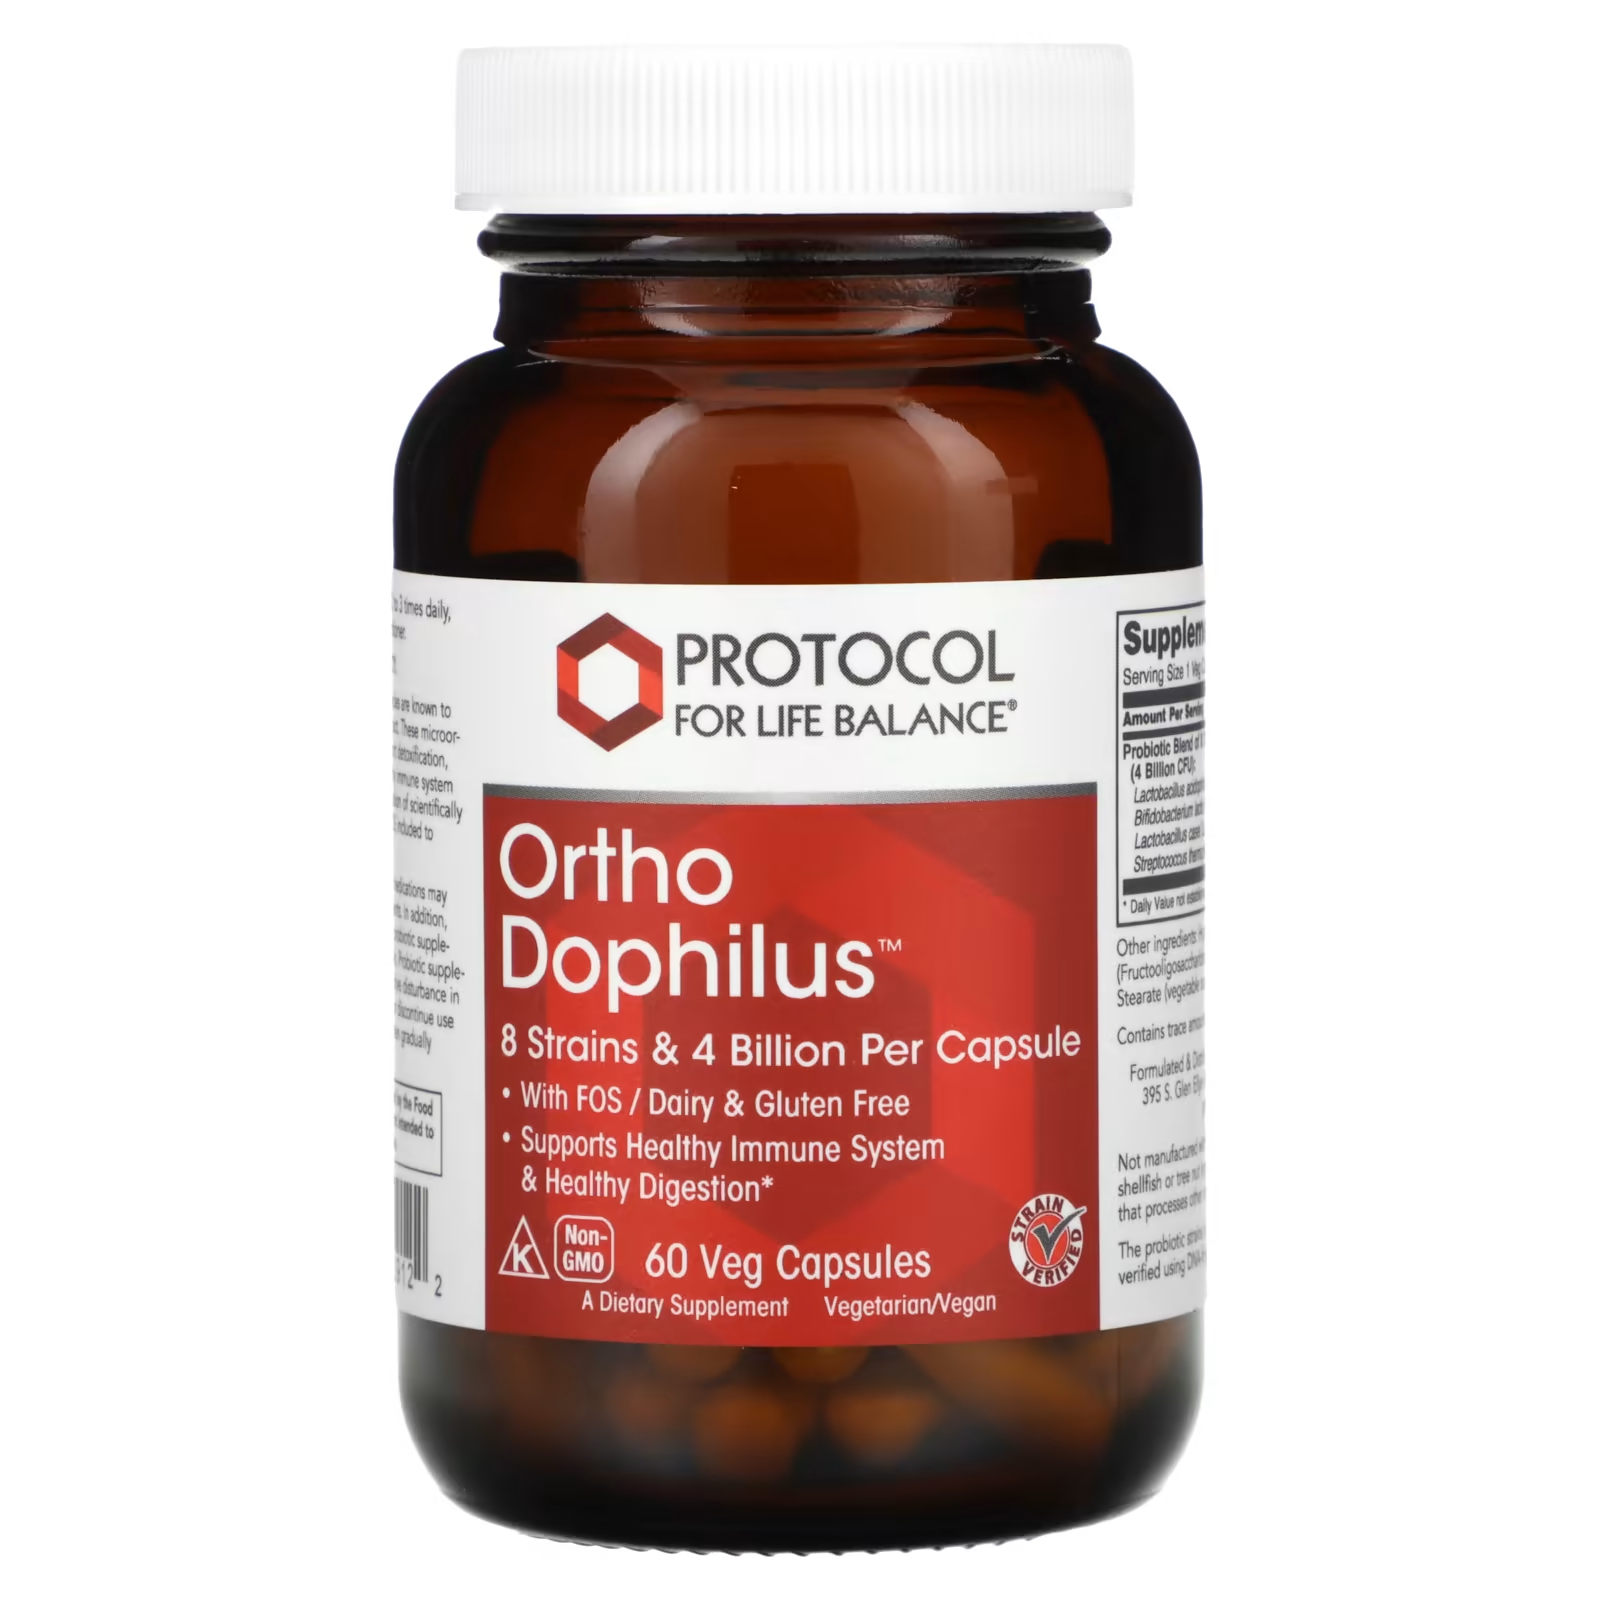 Пищевая добавка Protocol for Life Balance Ortho Dophilus, 60 капсул пищевая добавка protocol for life balance protodophilus 60 жевательных таблеток